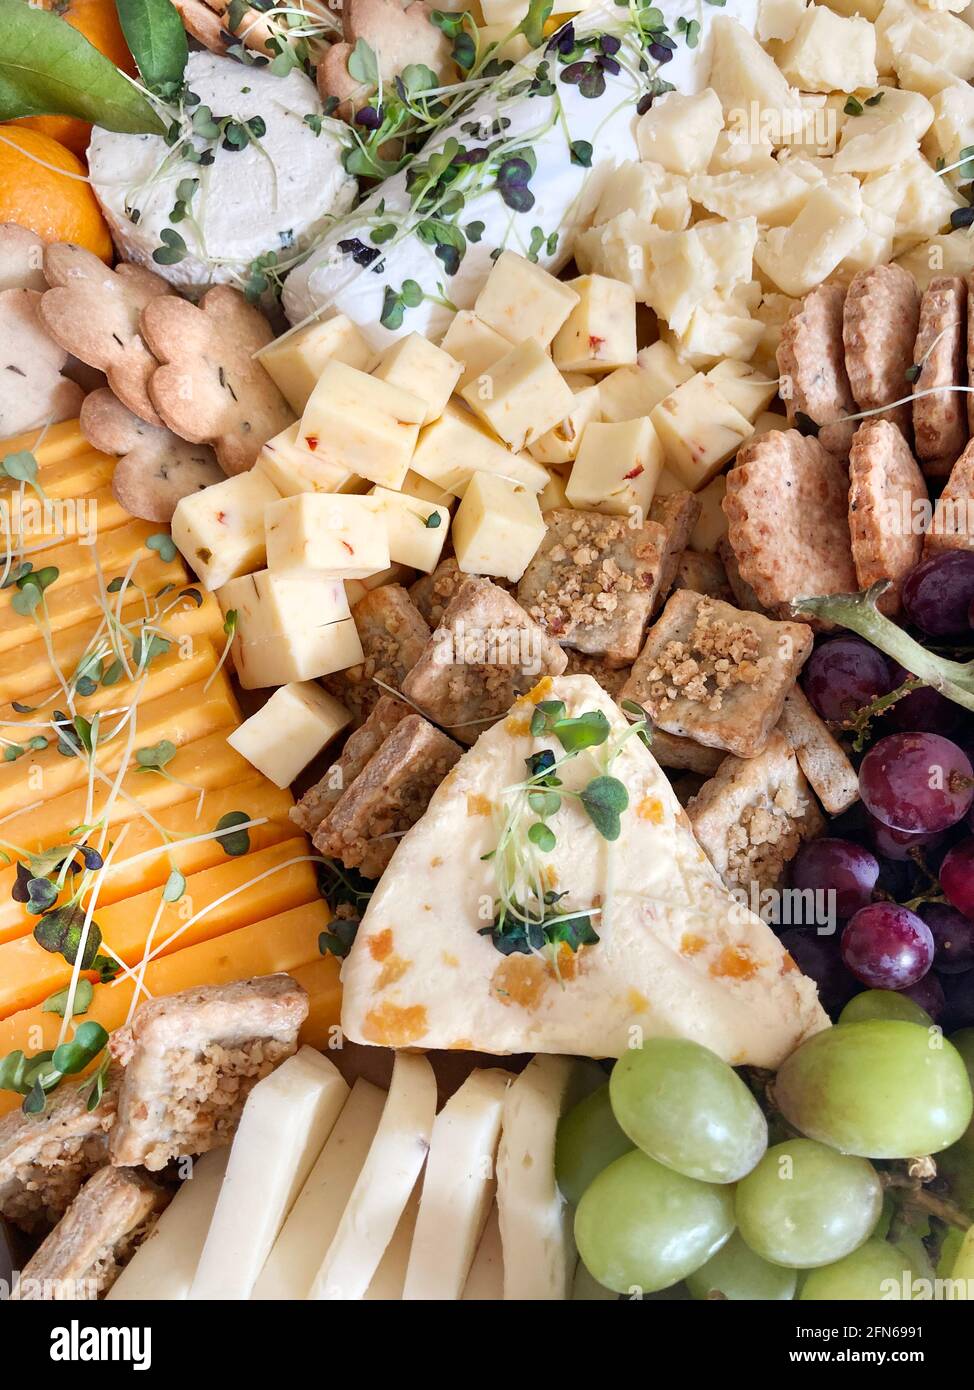 Plateau de fromages avec fruits et garnitures, vue en grand angle Banque D'Images